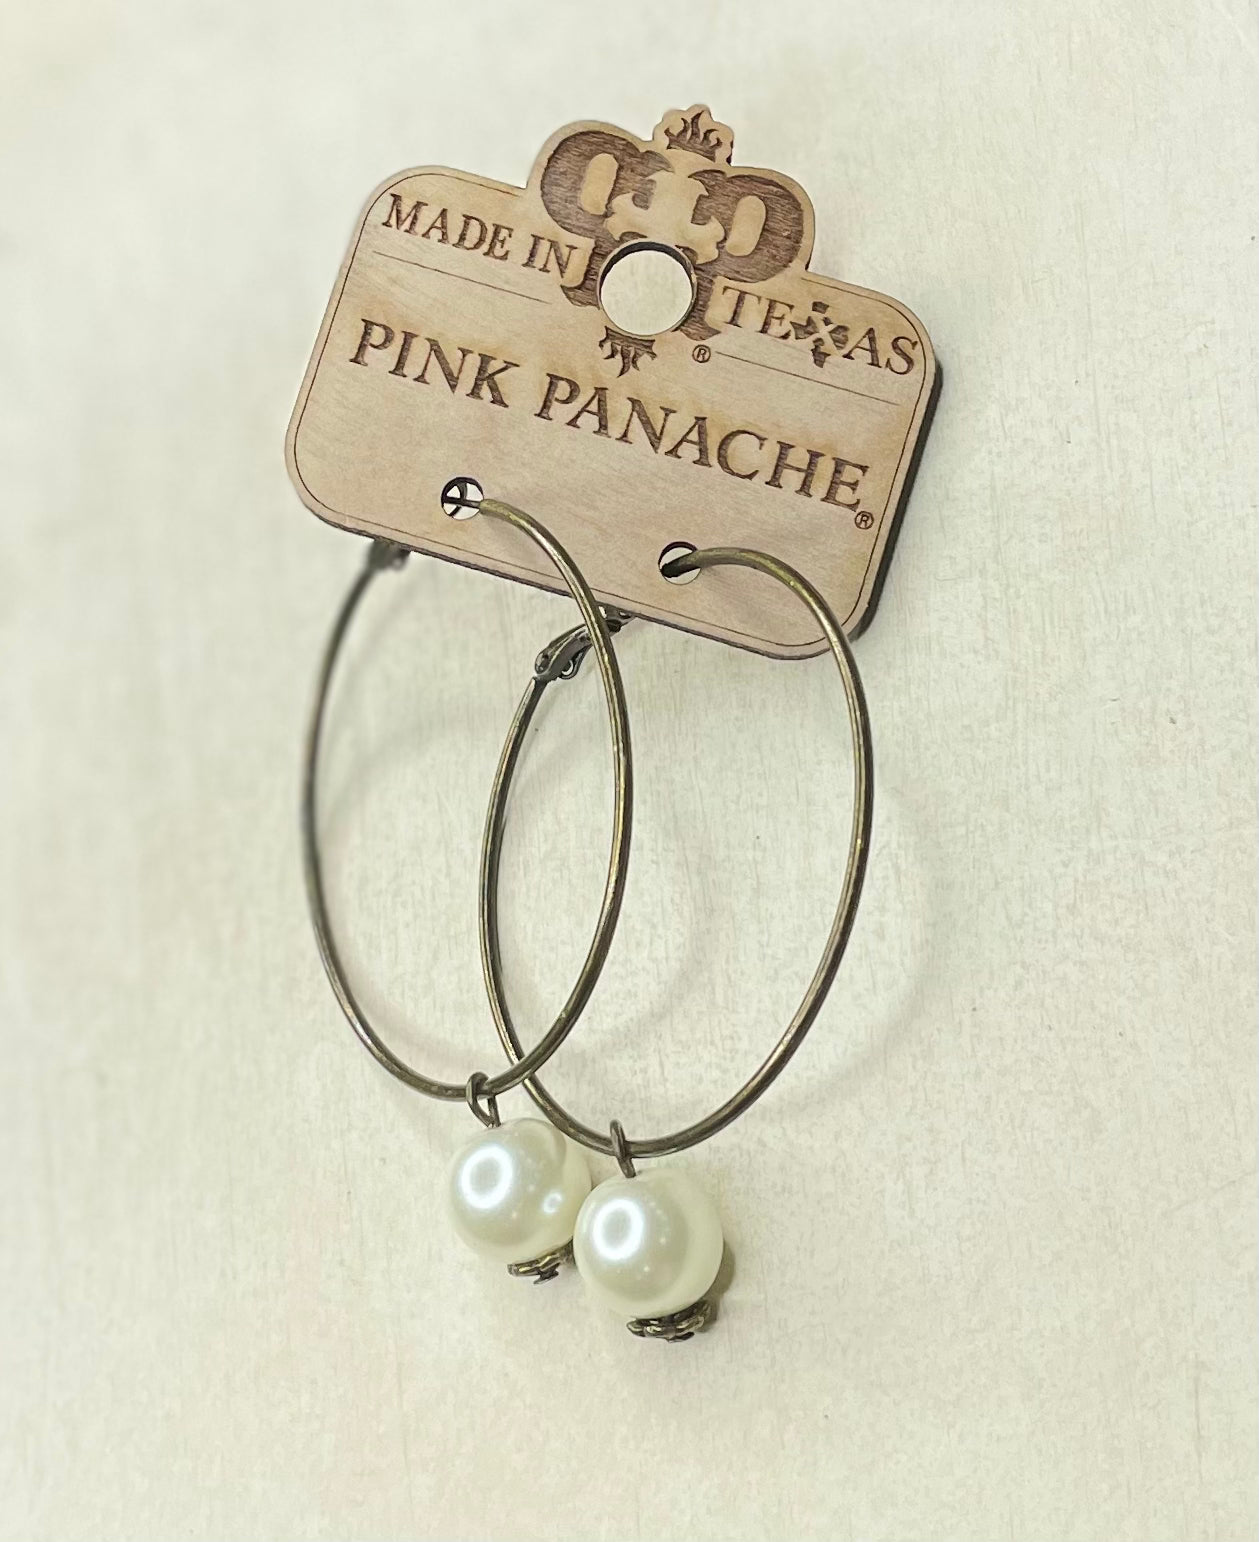 Pink Panache Earrings